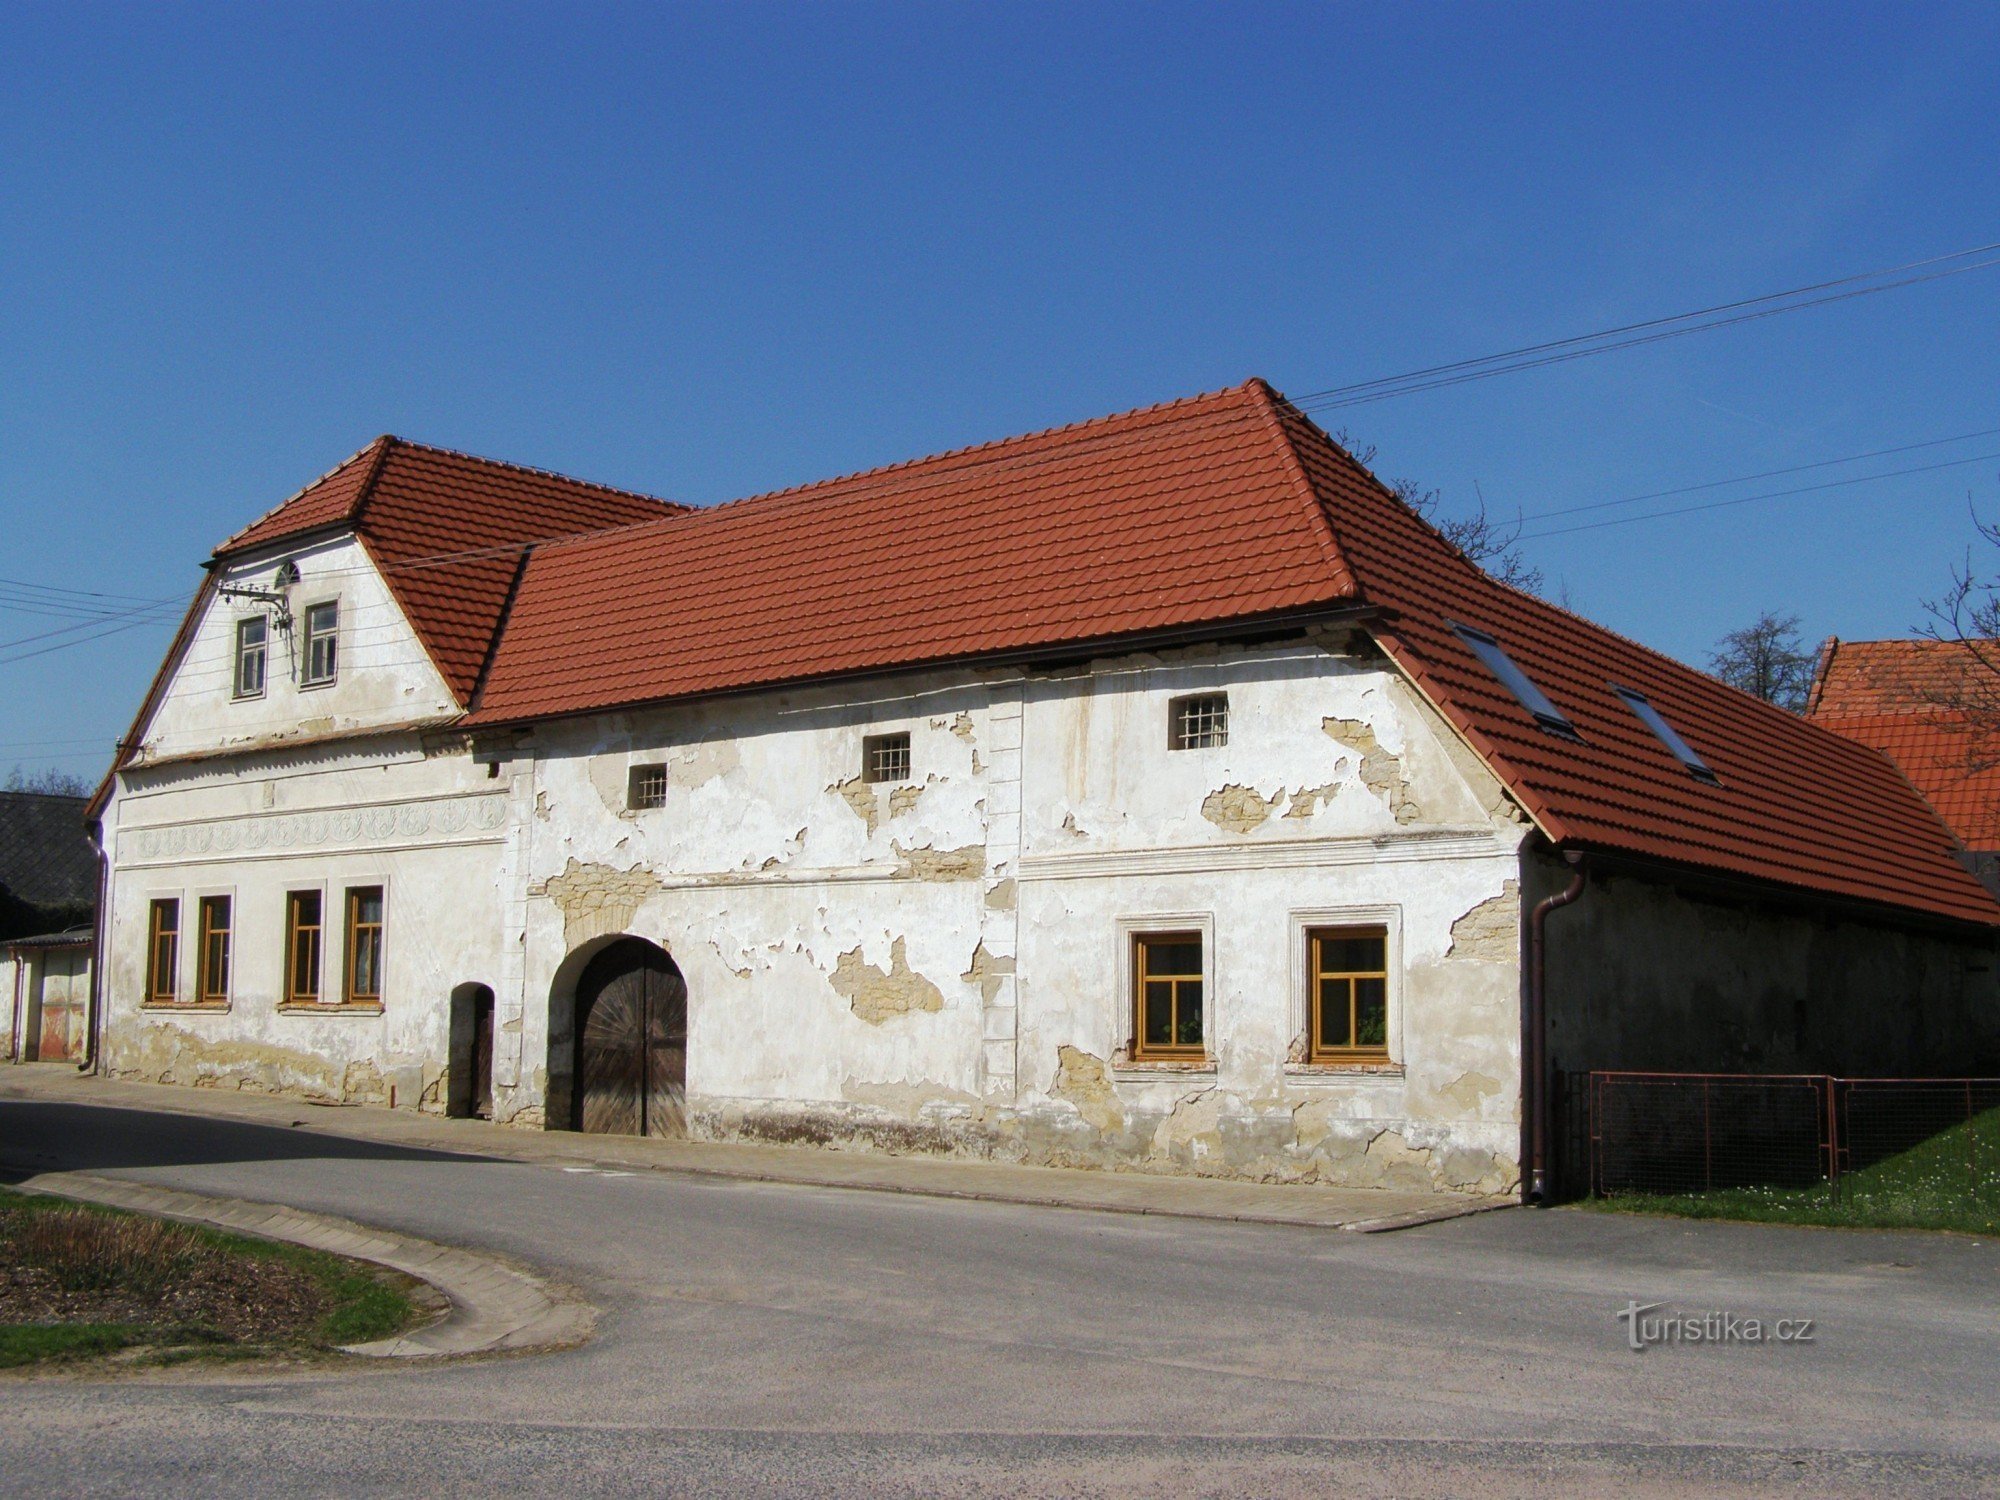 Újezdec - một trang trại cũ